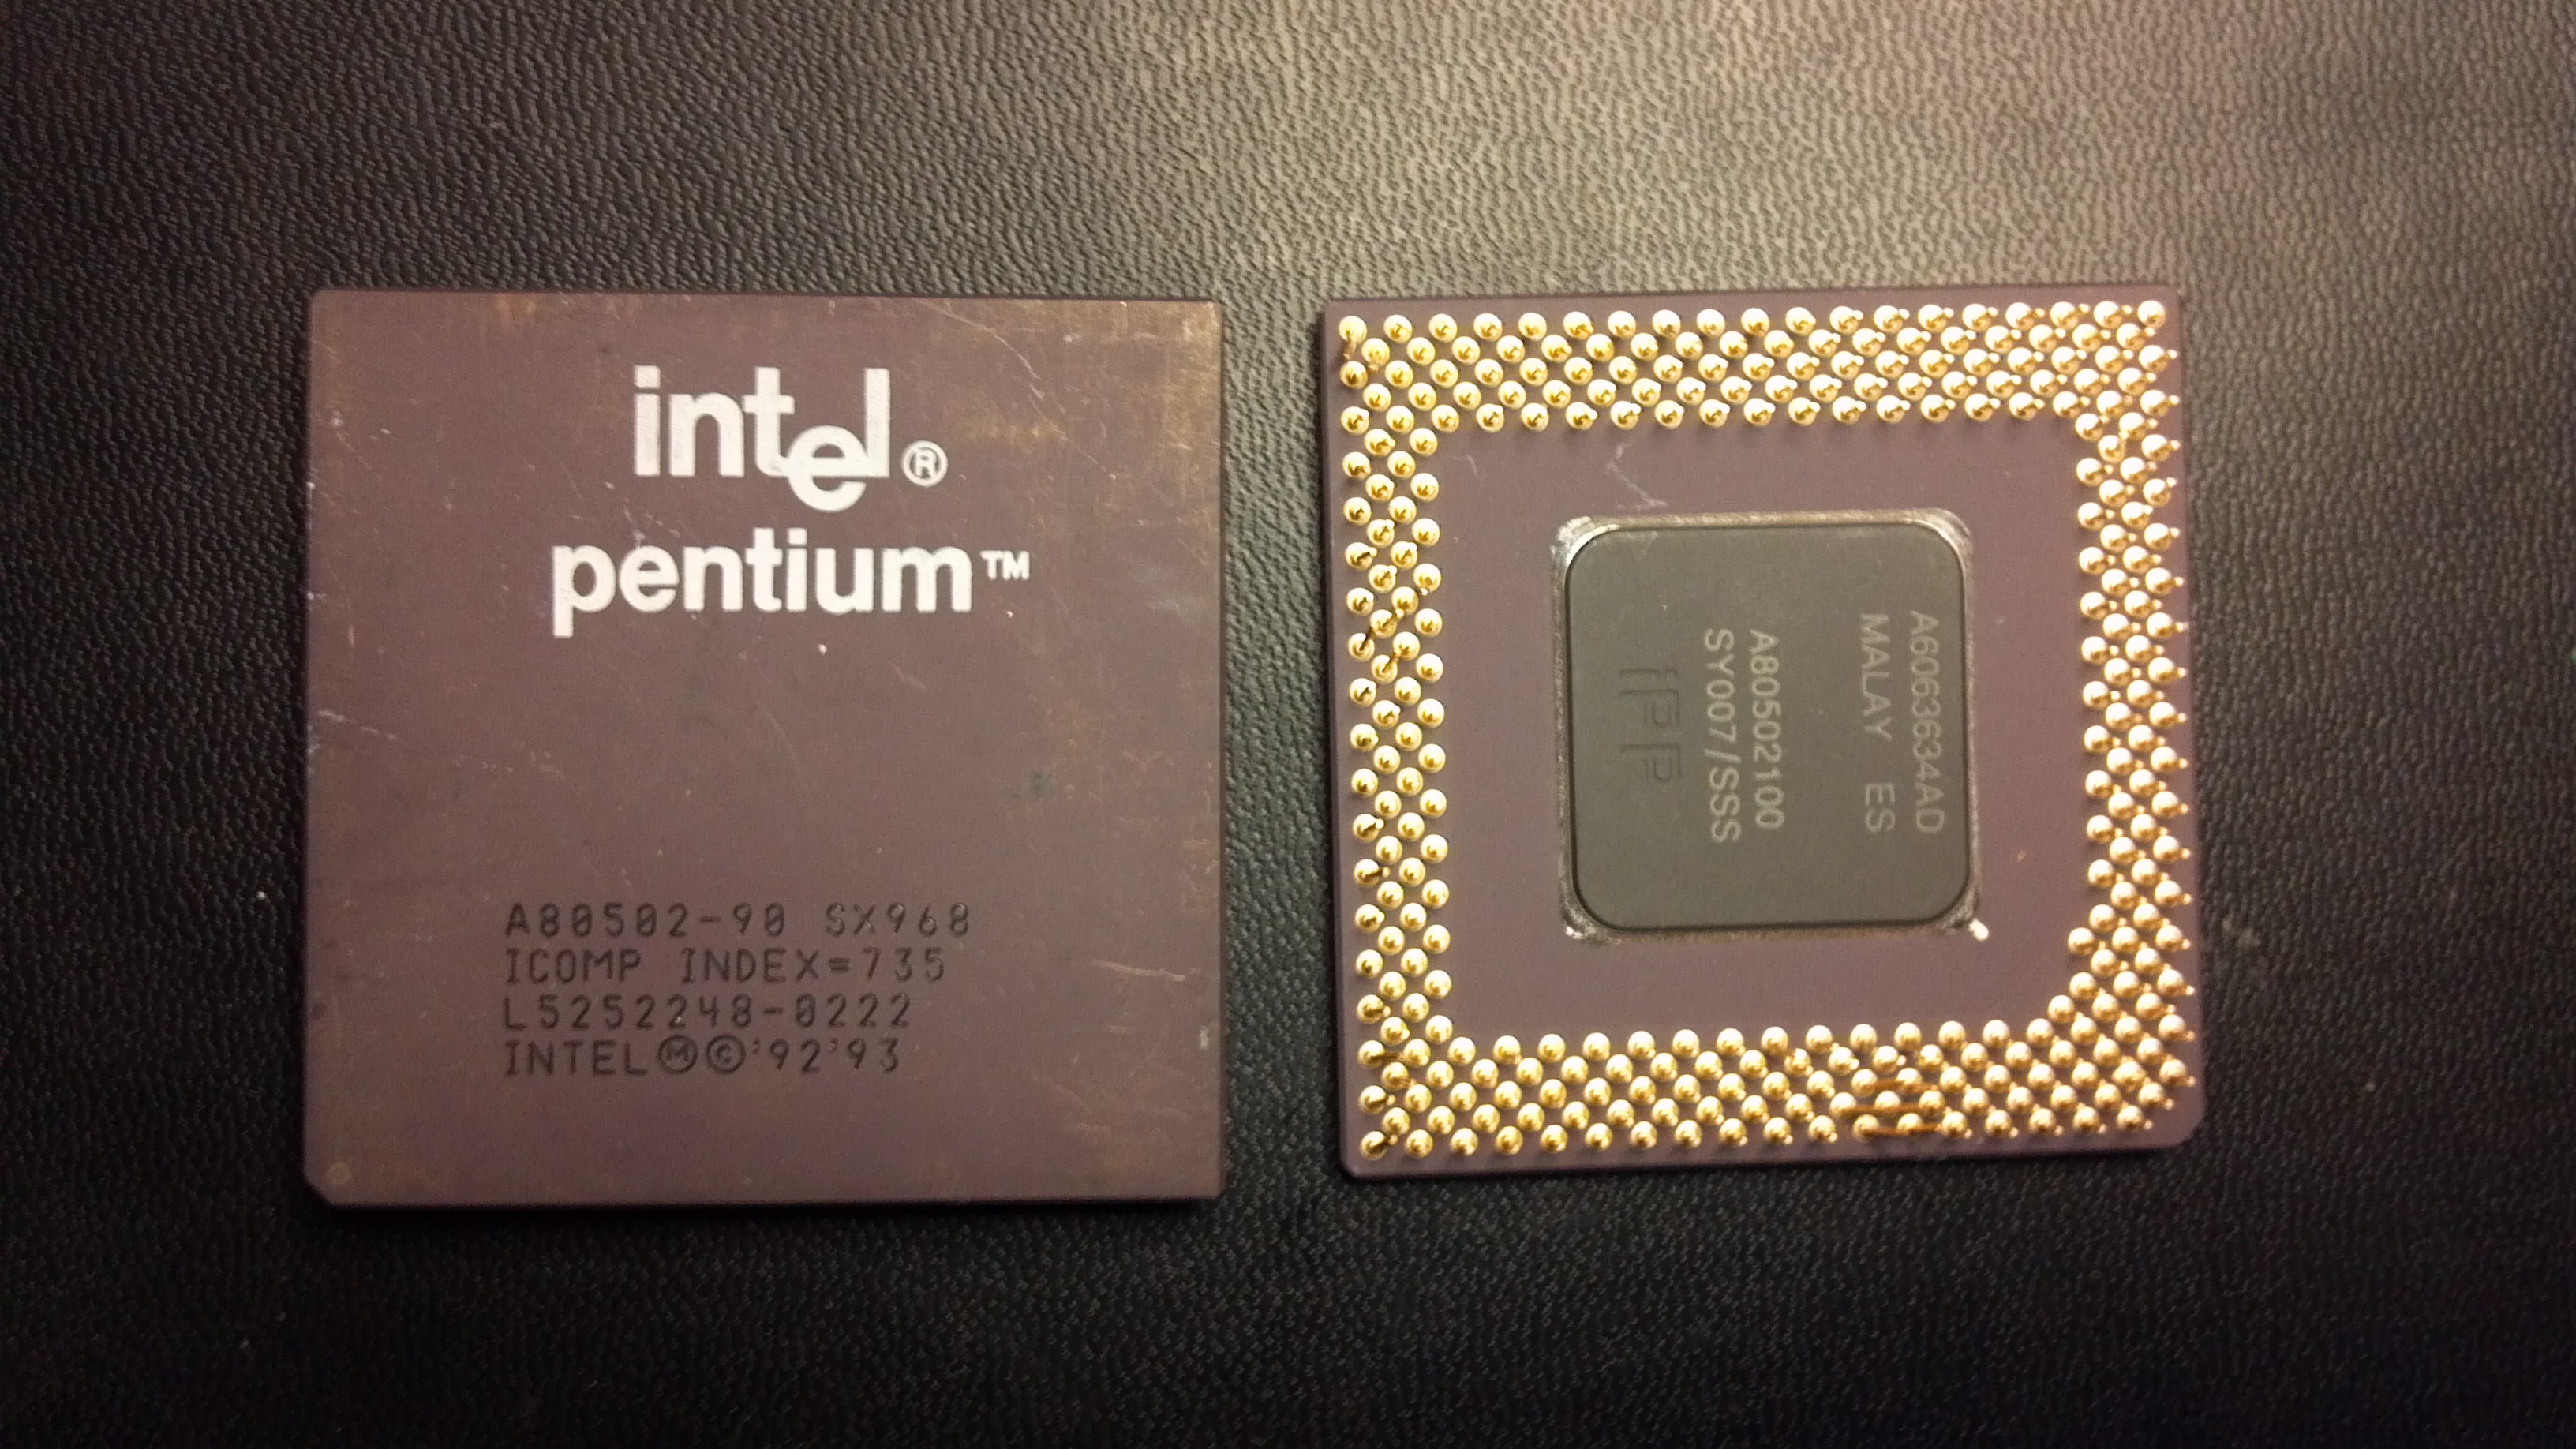 Интел коре пентиум. Процессор Intel Pentium 1. Процессор Intel Pentium a2892. Первый процессор Интел пентиум. Процессор Intel Pentium 2001 корпус.